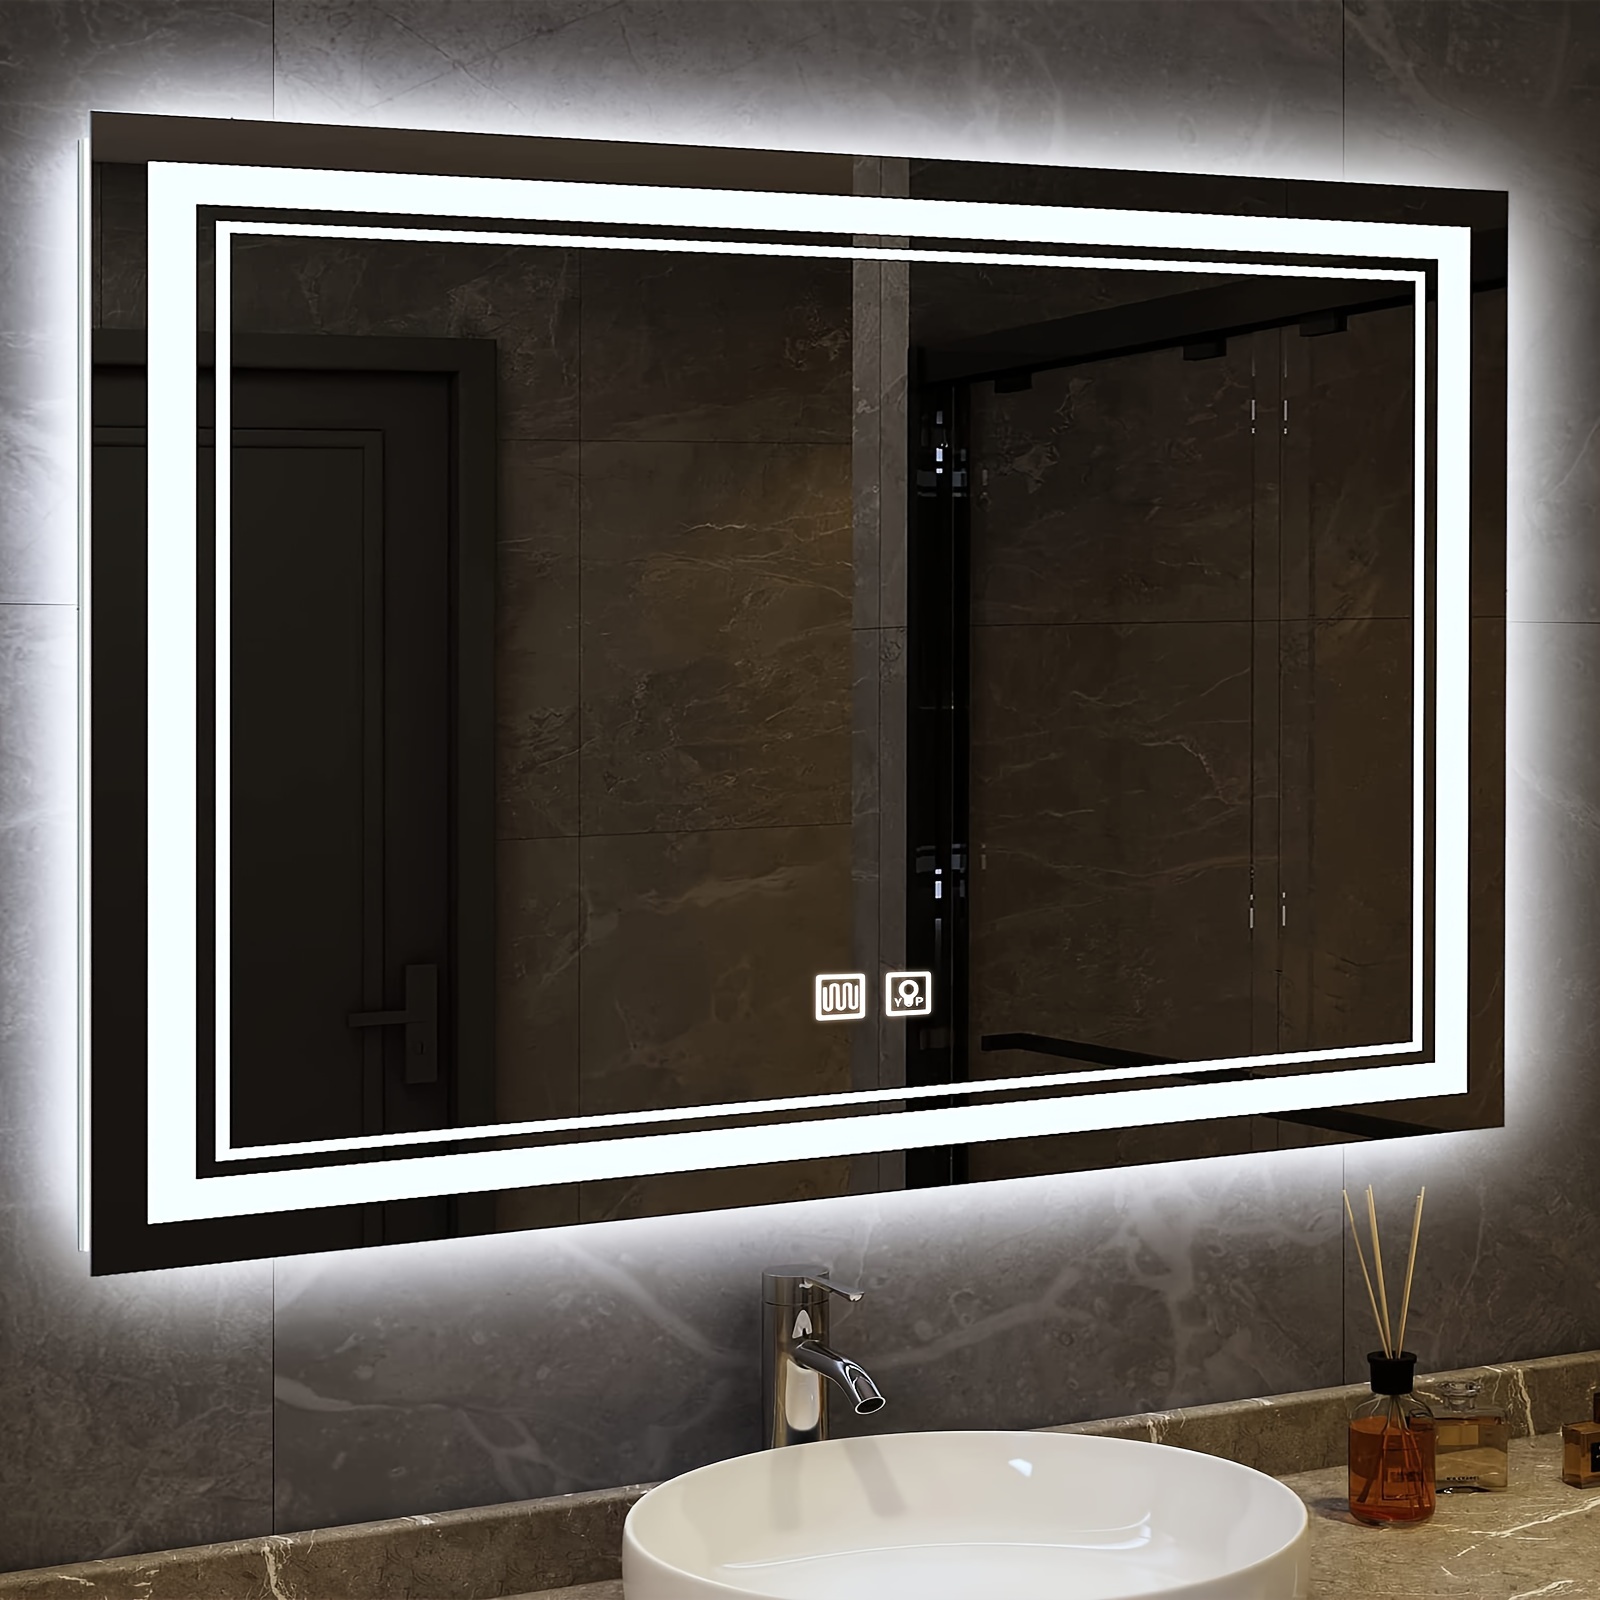 Aplique LED Cromado para espejo de baño de 8, 12 y 16W